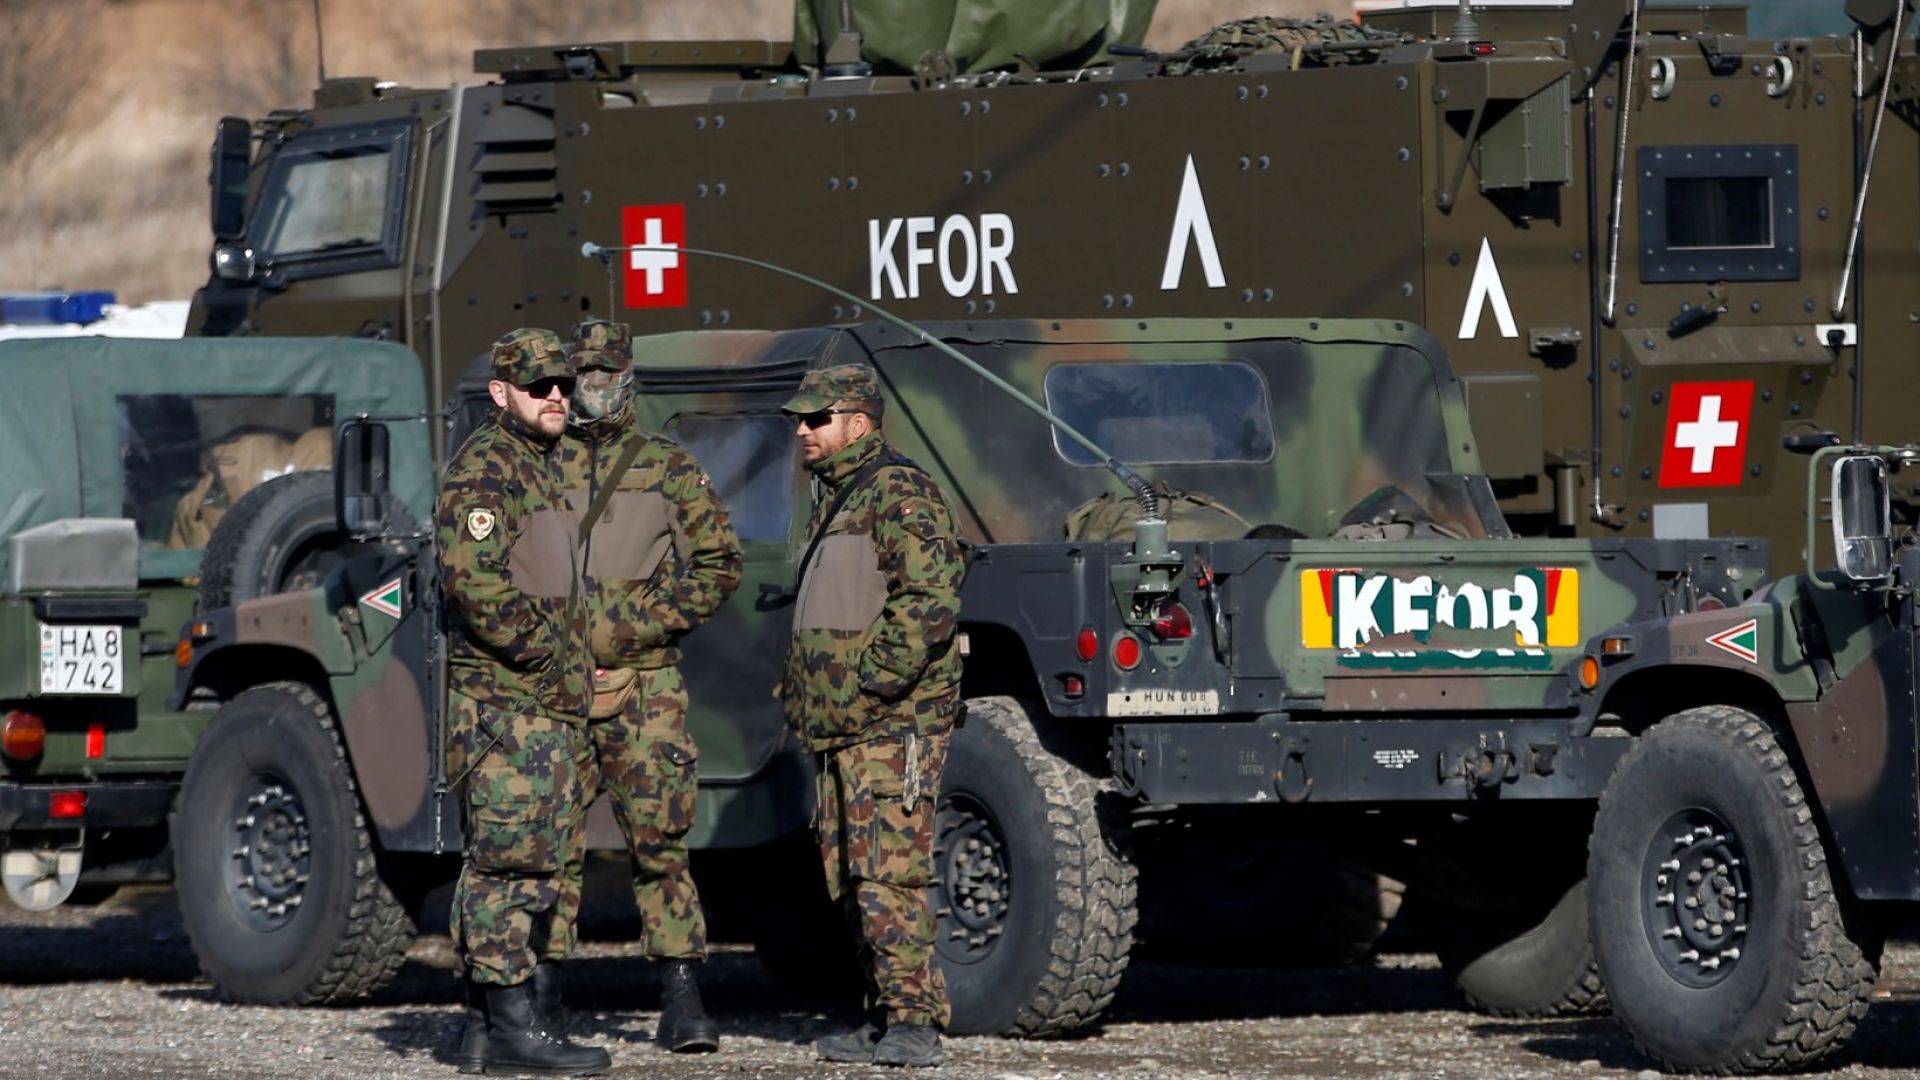 Сърбия поиска от КейФОР разрешение да разположи свои войски в Косово